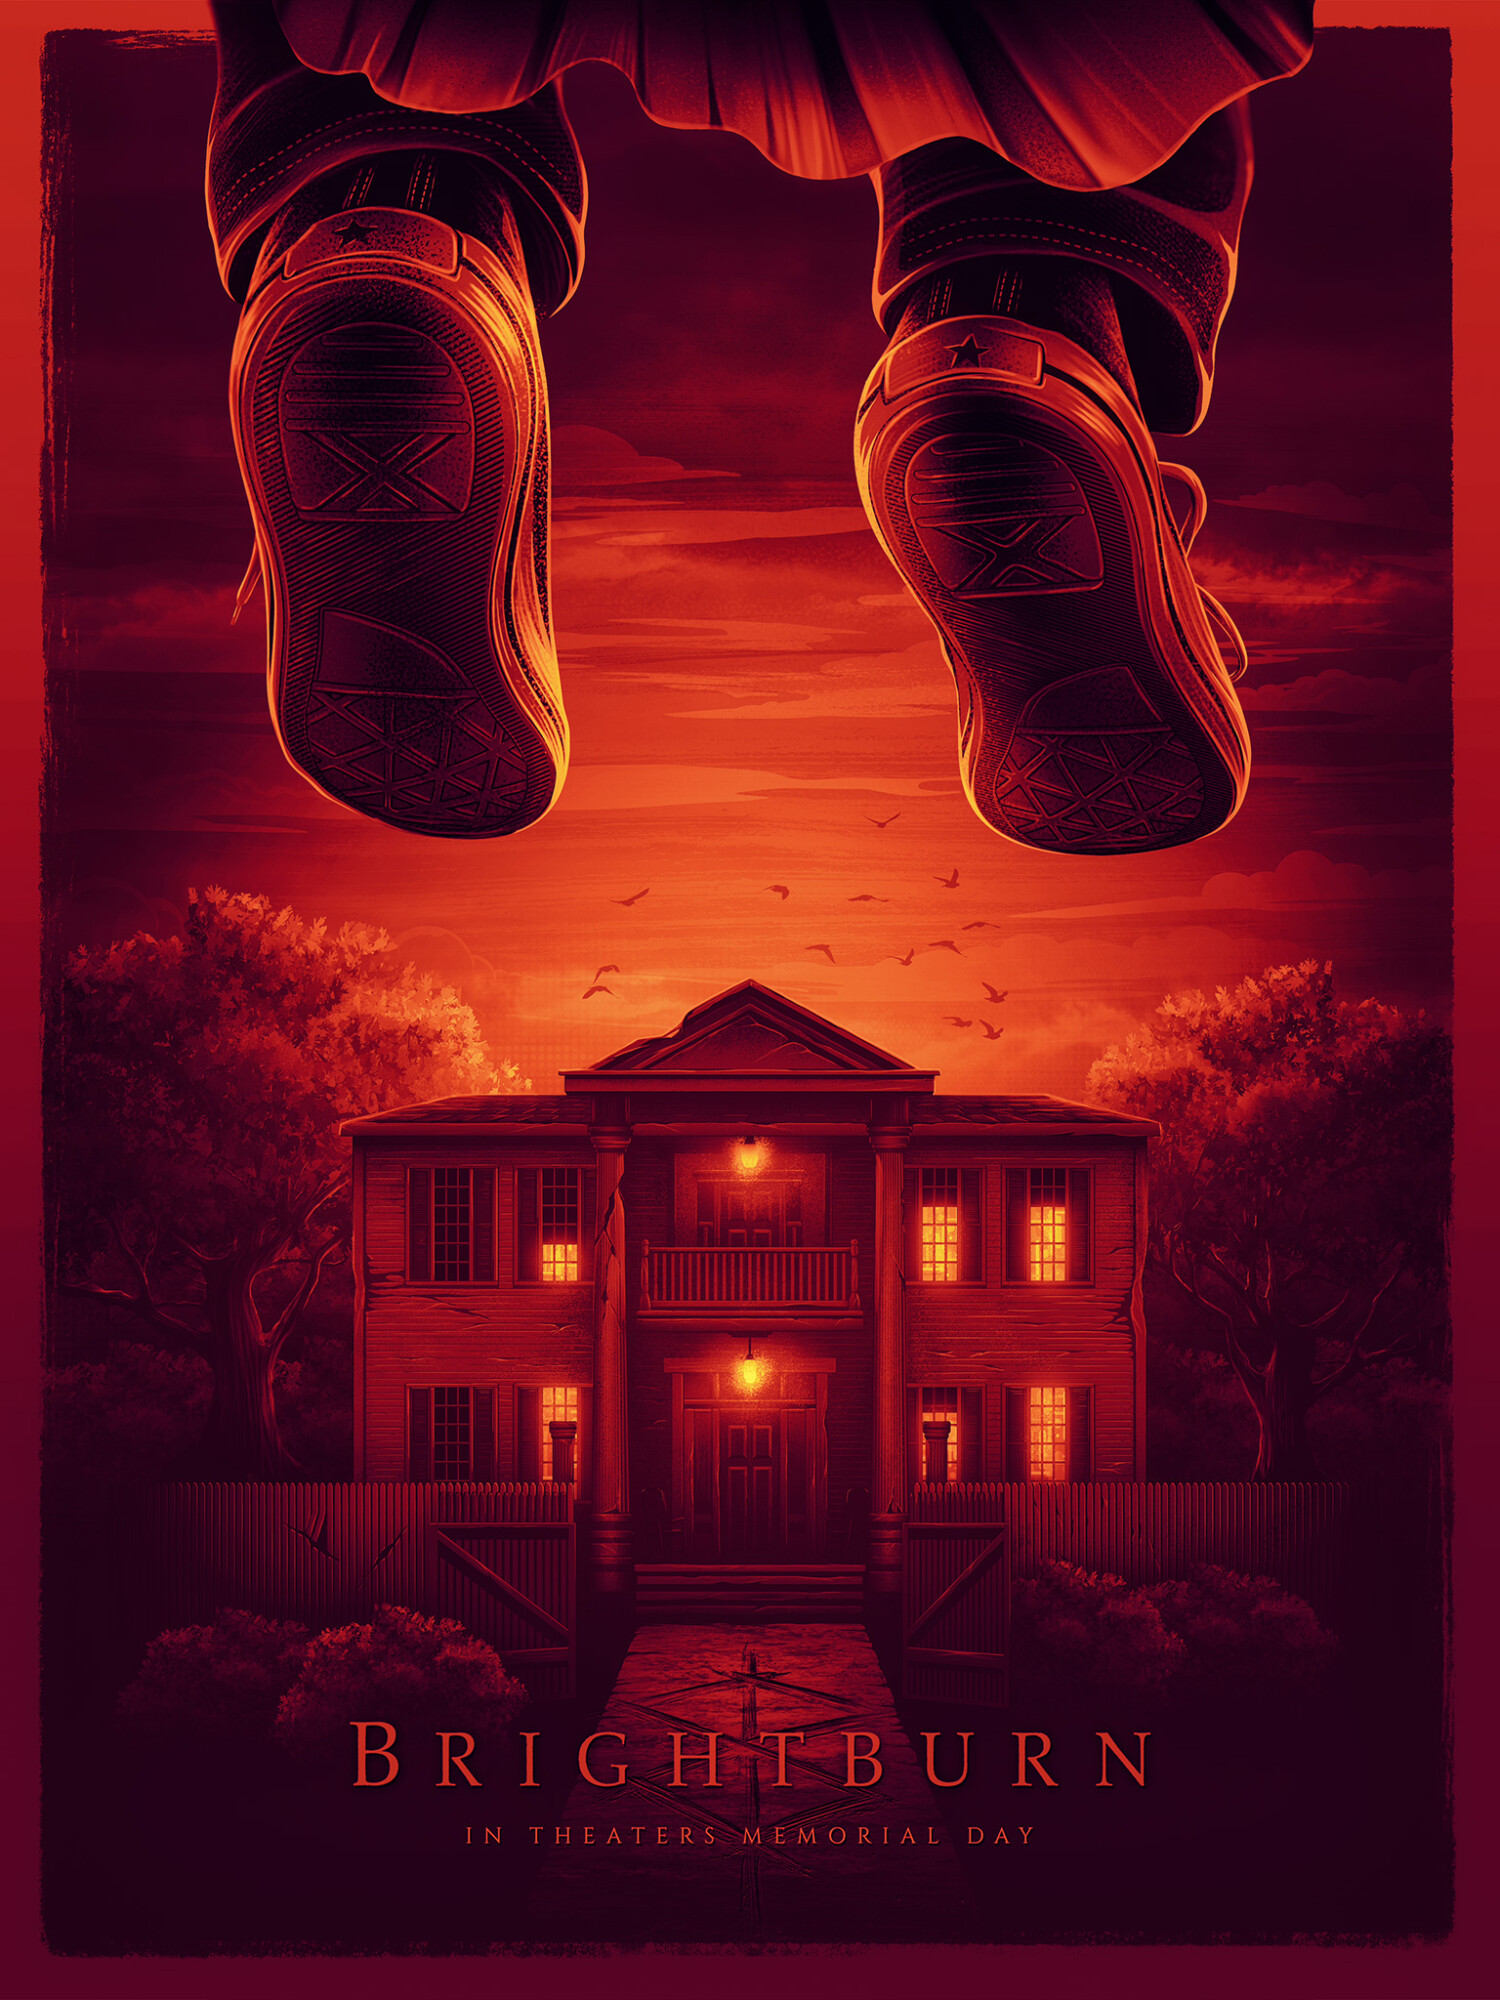 Brightburn movie poster - PosterSpy